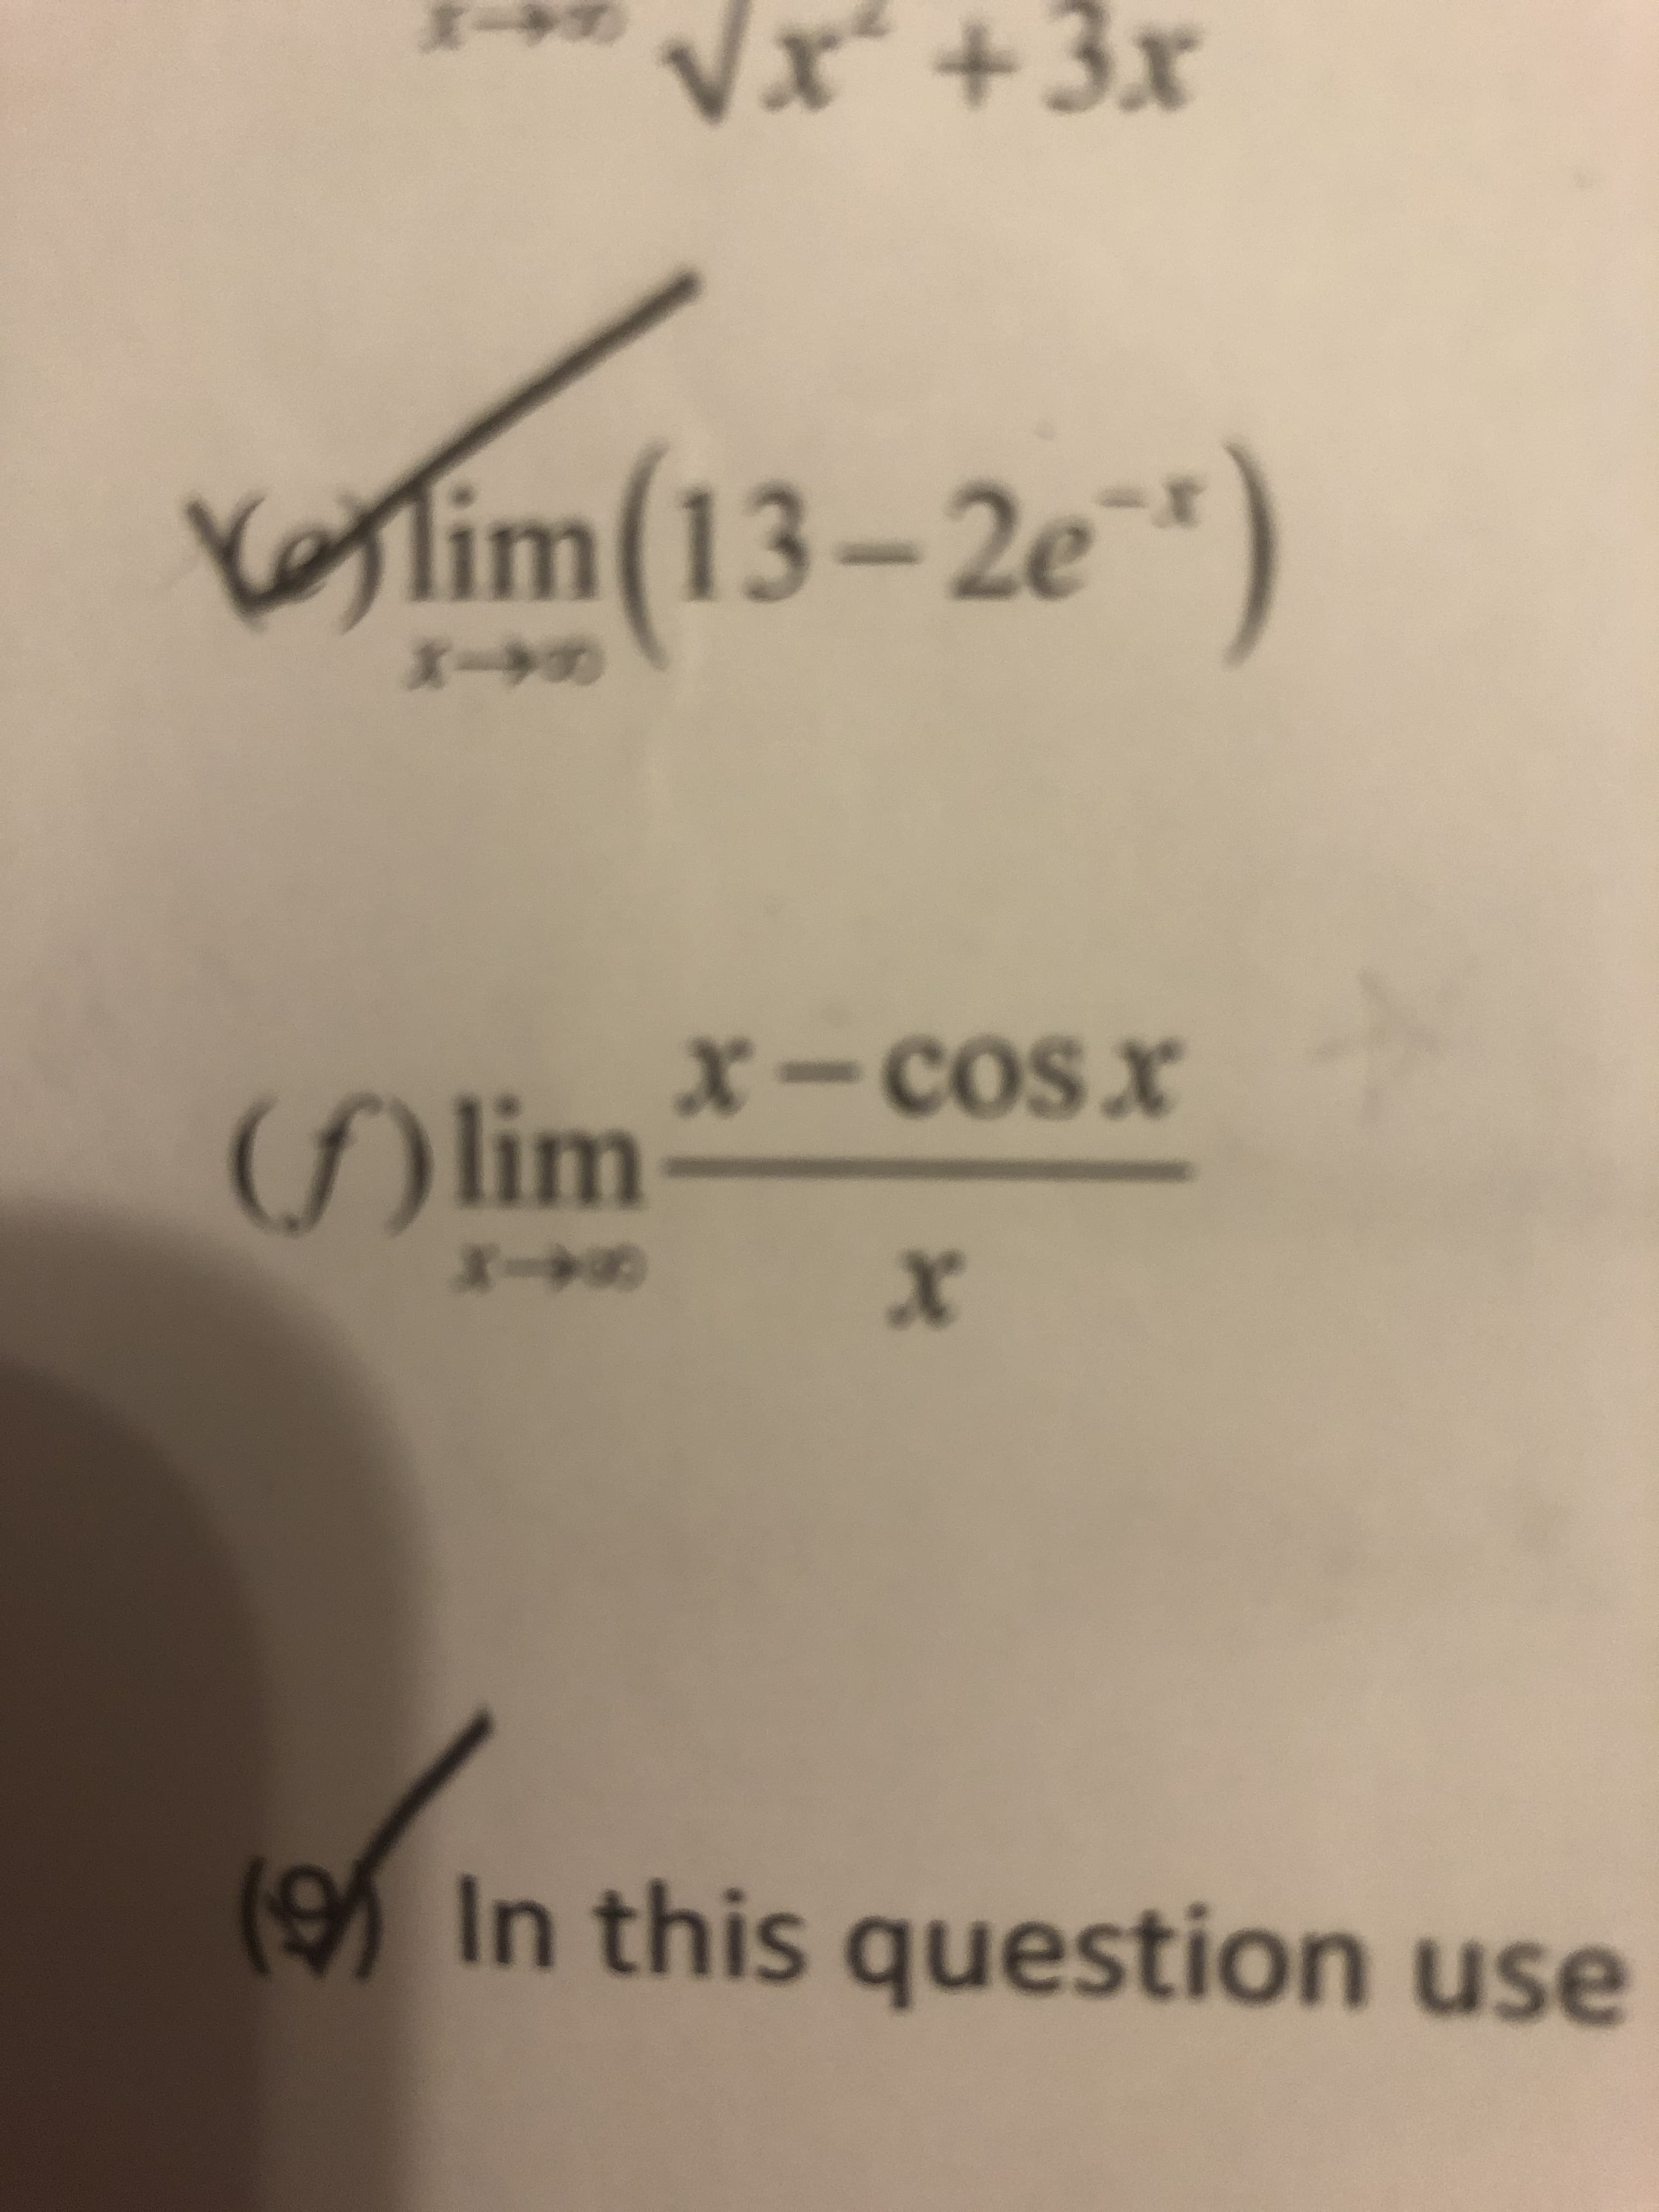 Vx +3x
3
lim(13-2e
r
X->
X-CoS x
( lim
X
In this question use
